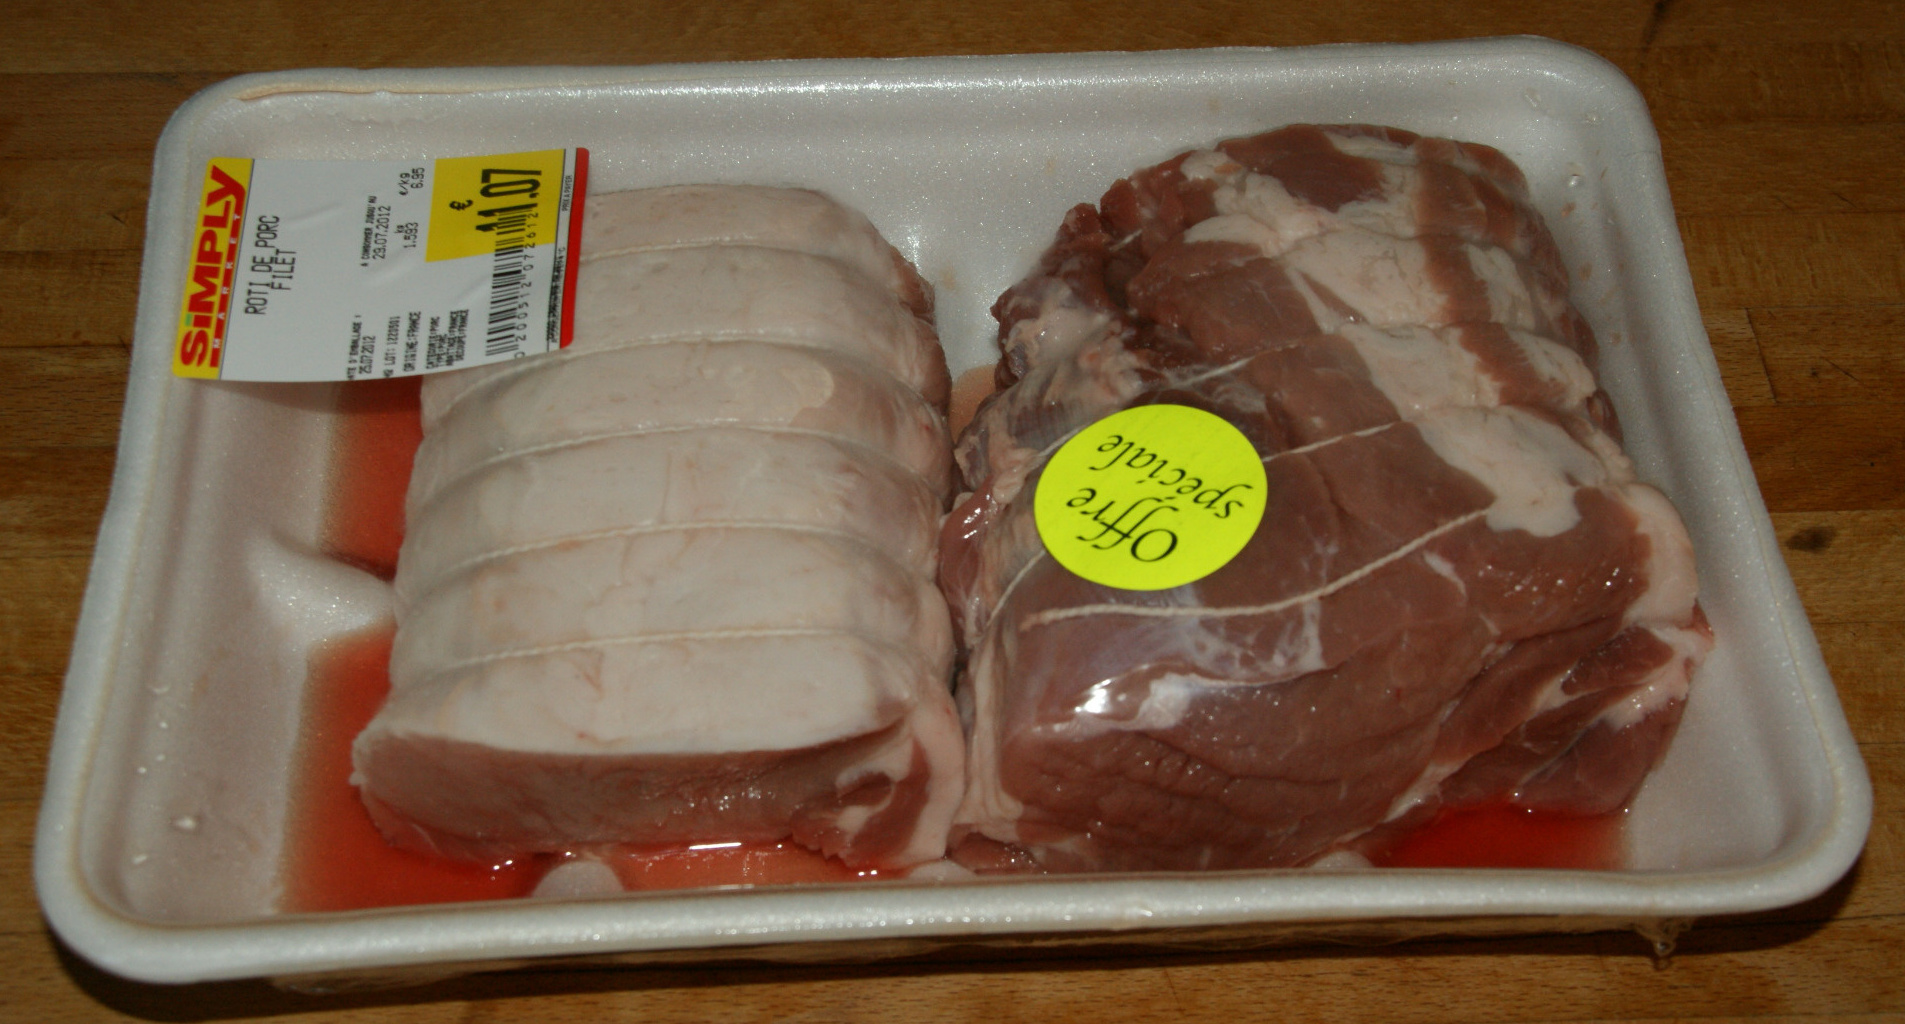 Rôti de porc dans le filet - Produto - fr